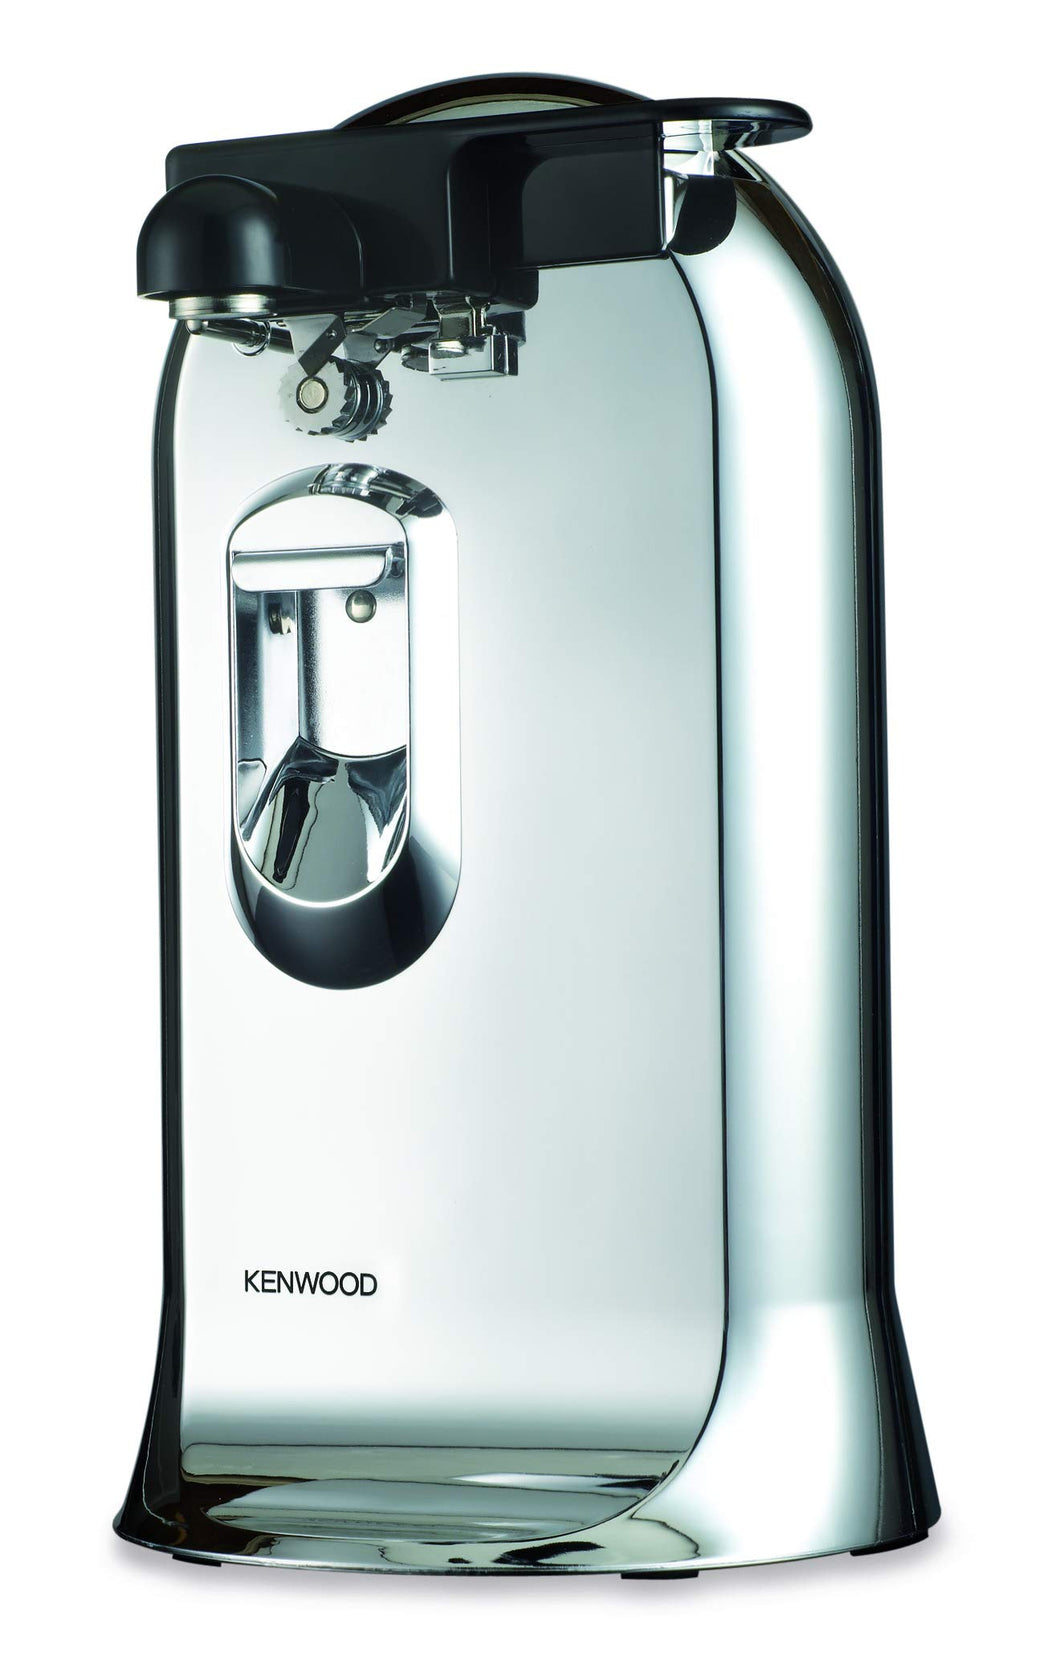 Kenwood CO606.SI, 3-in-1, Can Opener, Knife Sharpener, Bottle Opener - Chrome